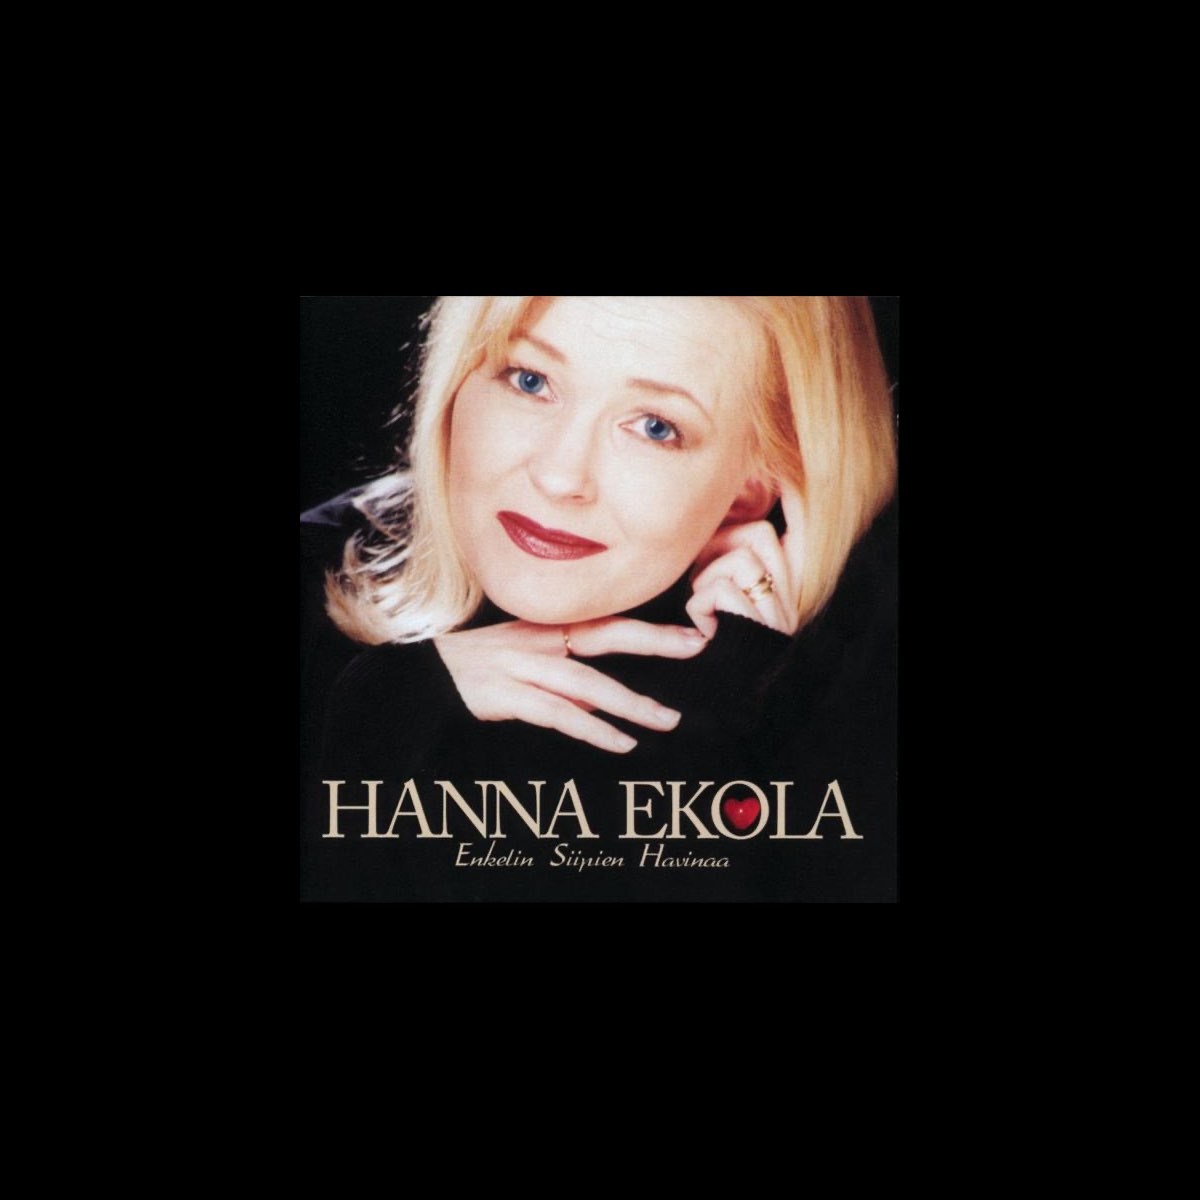 Enkelin Siipien Havinaa by Hanna Ekola on Apple Music